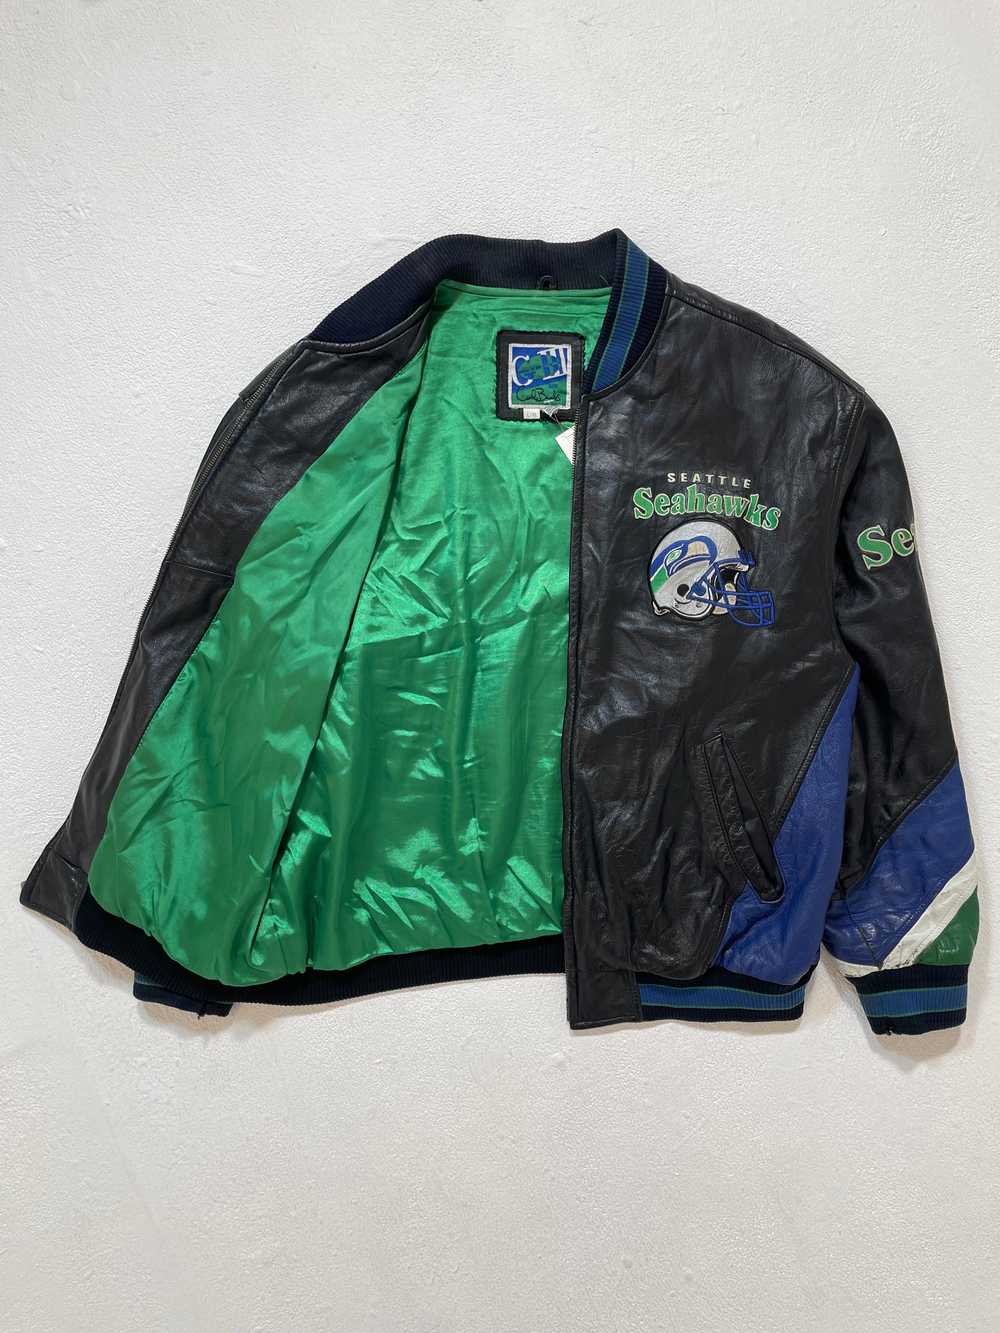 Vintage Seattle Seahawks Leather Jacket Sz. L - image 3